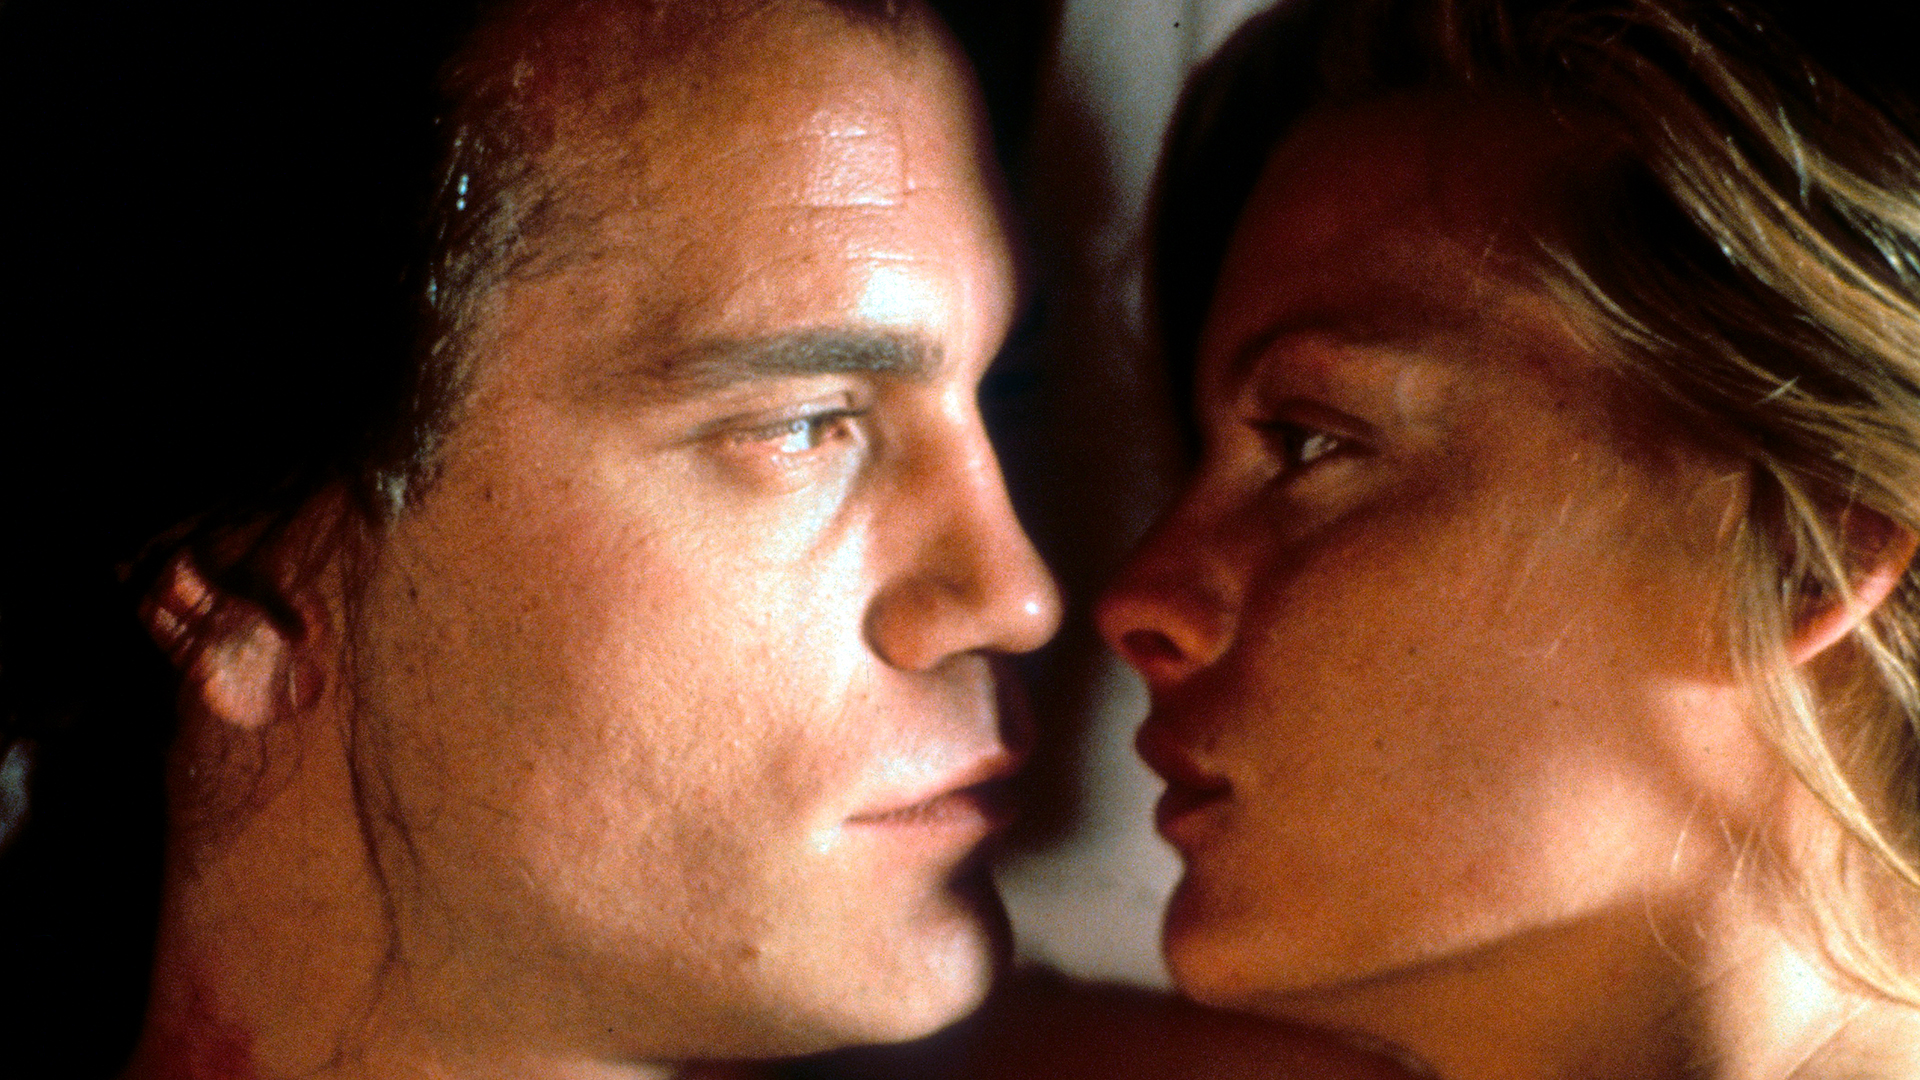 Michelle Pfeiffer y John Malkovich en el rodaje de Relaciones Peligrosas, donde tuvieron un romance en la pantalla que se trasladó a la vida real. Él se separó de su esposa, pero no duraron mucho (Photo by Metro-Goldwyn-Mayer/Getty Images)